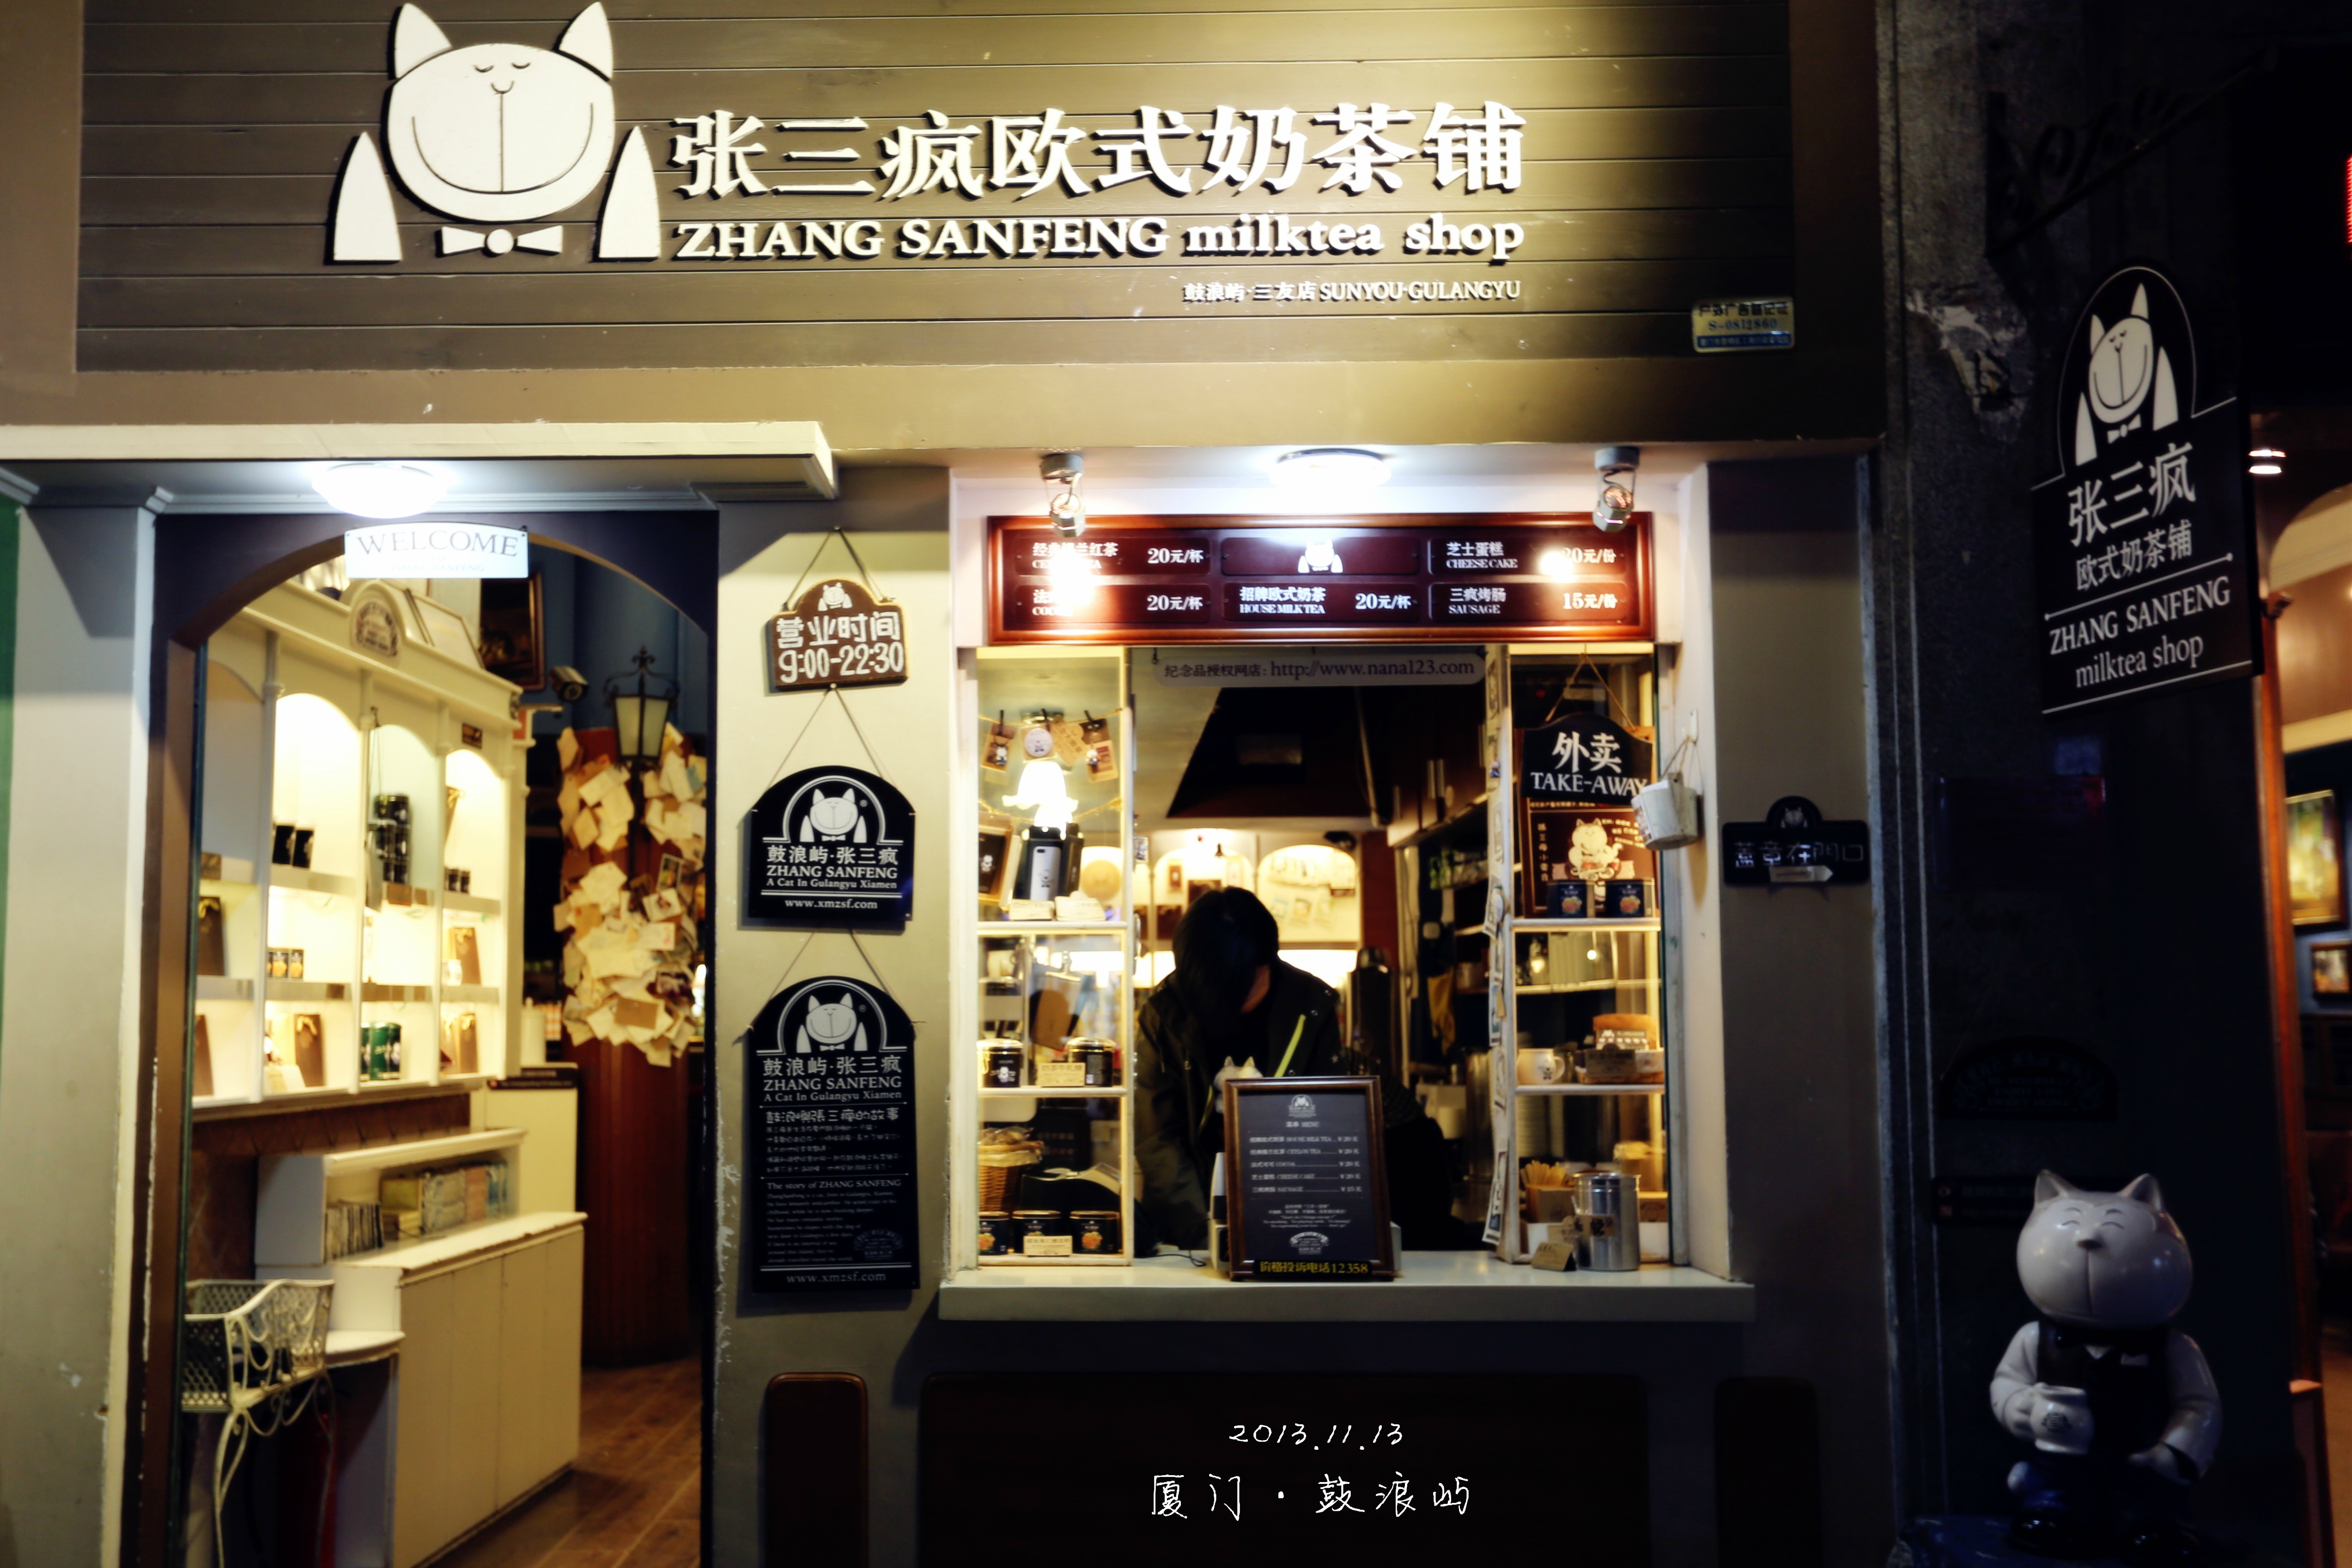 2013年11月13日摄于福建省厦门市鼓浪屿张三疯奶茶店